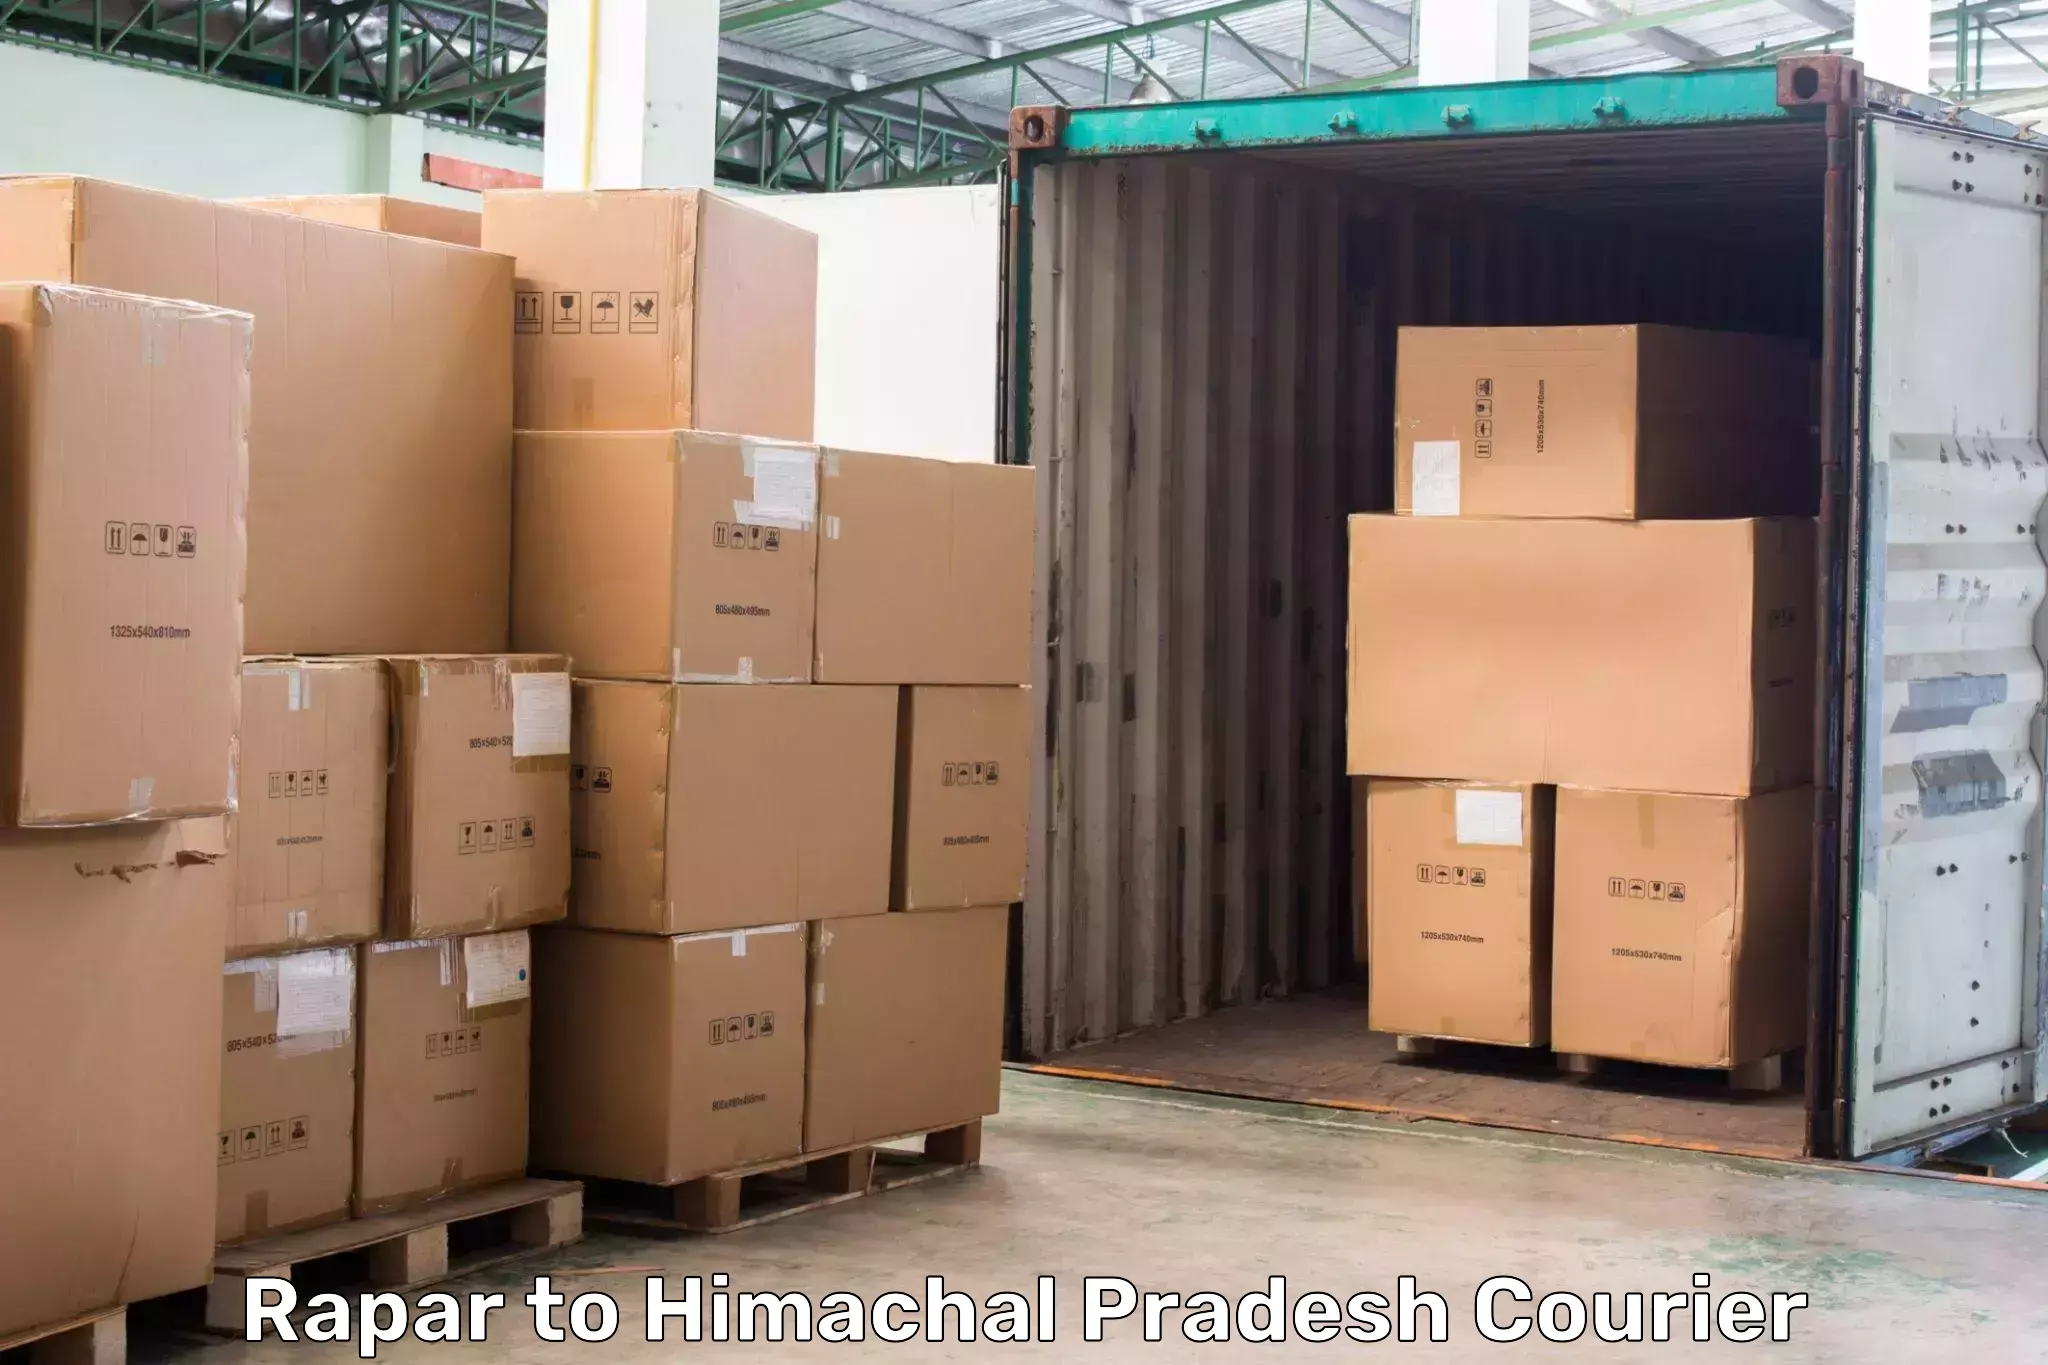 Air courier services Rapar to Bilaspur Himachal Pradesh